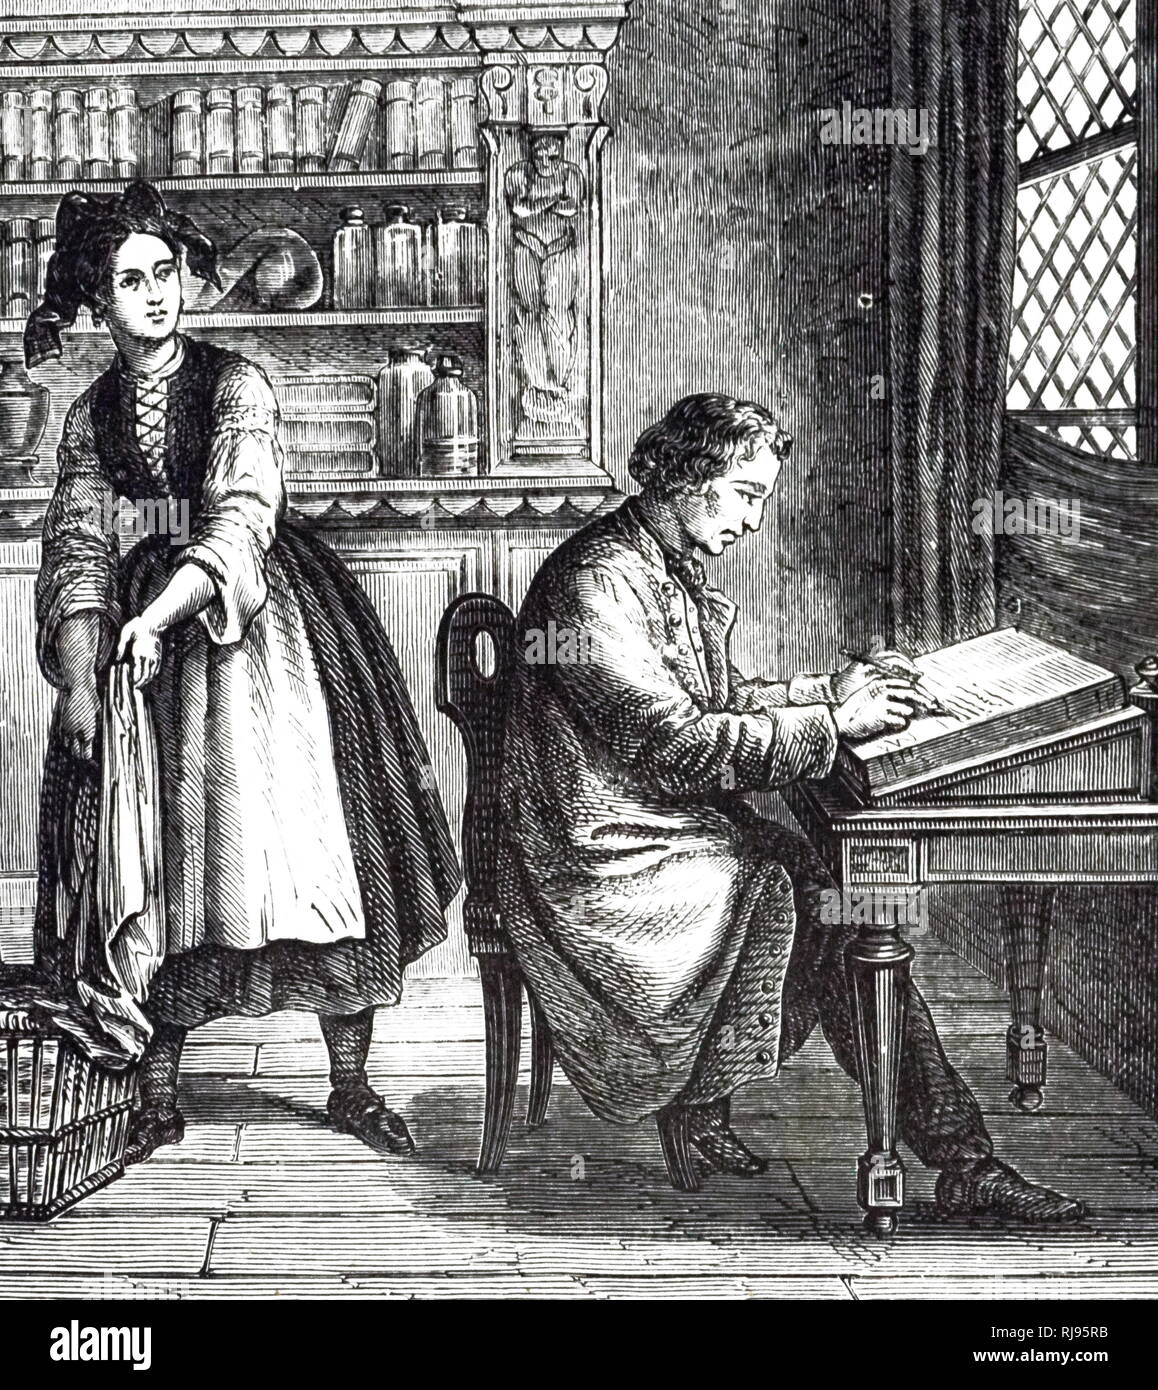 Un grabado representando a Alois Senefelder descubriendo el proceso de litografía por casualidad. Alois Senefelder (1771-1834), un actor y dramaturgo alemán que inventó la litografía en los 1790s. Fecha del siglo XIX Foto de stock